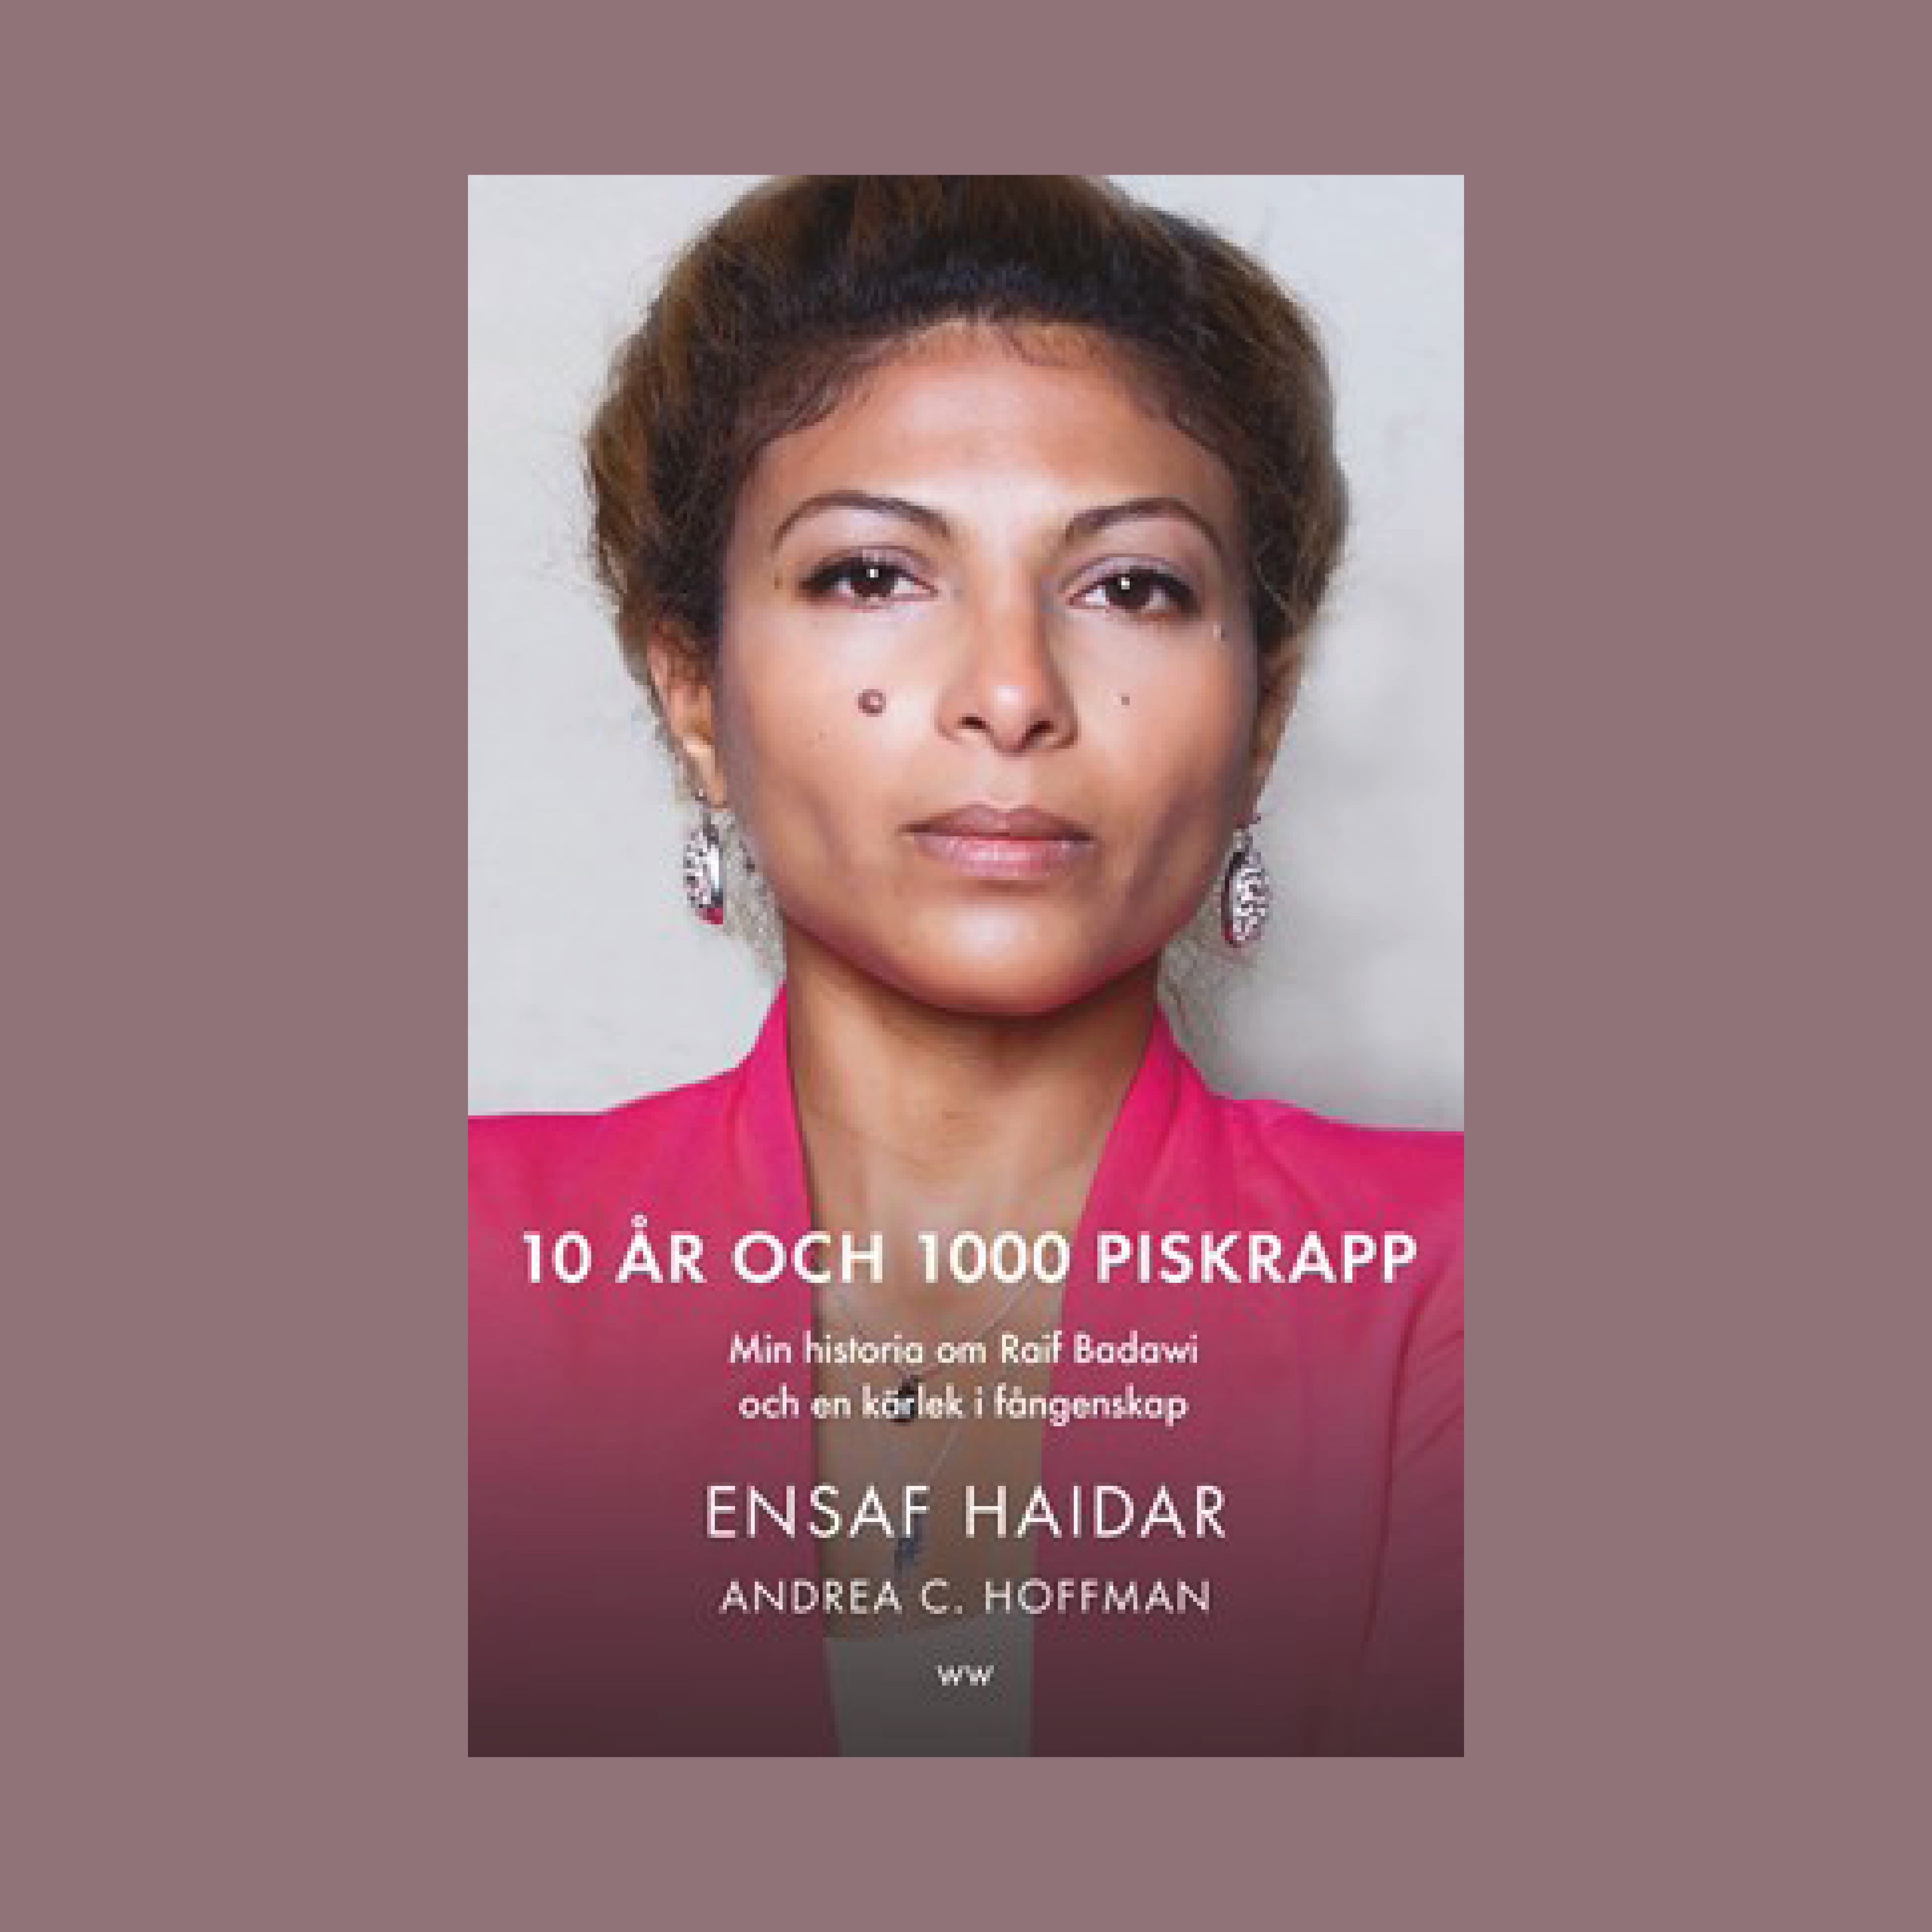 10 år och 1000 piskrapp av Einsaf Haidar